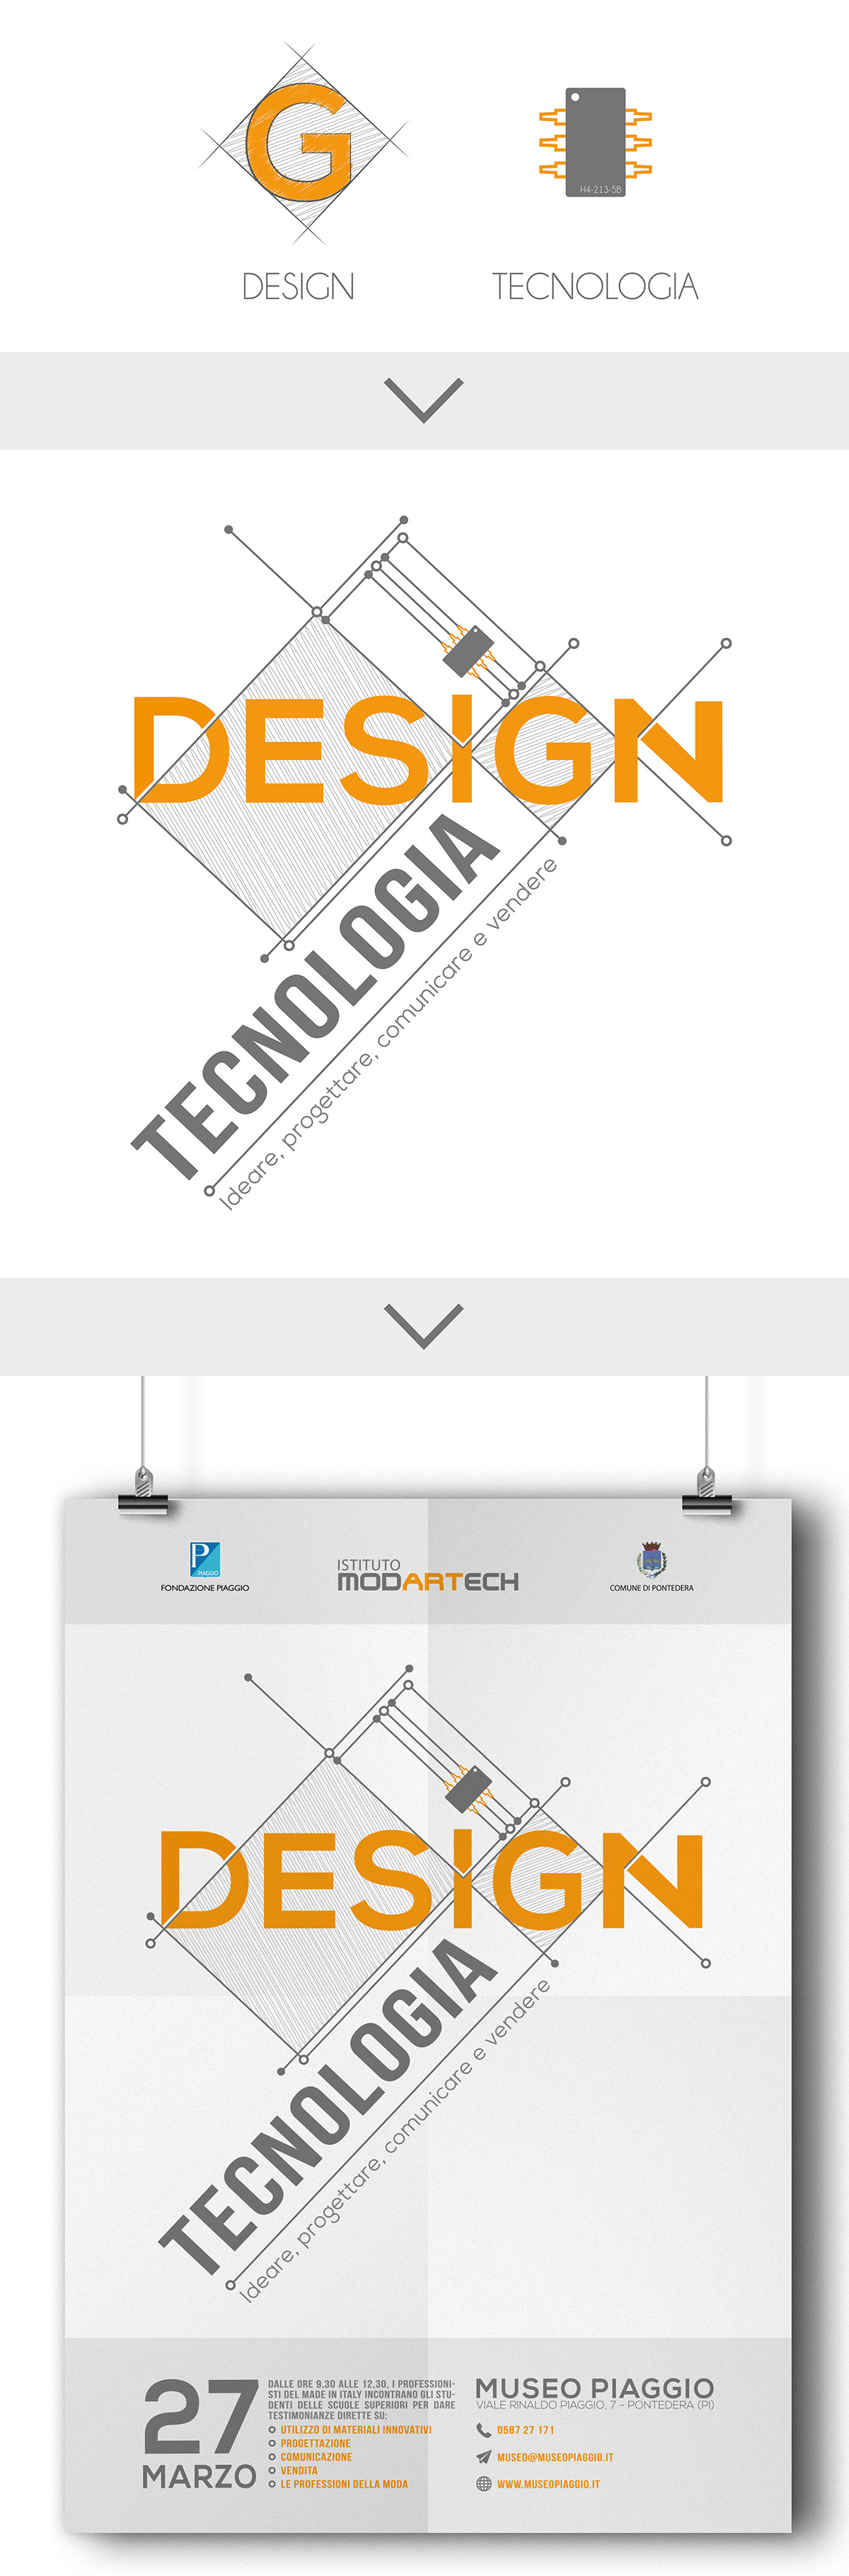 poster design Technology flatdesign